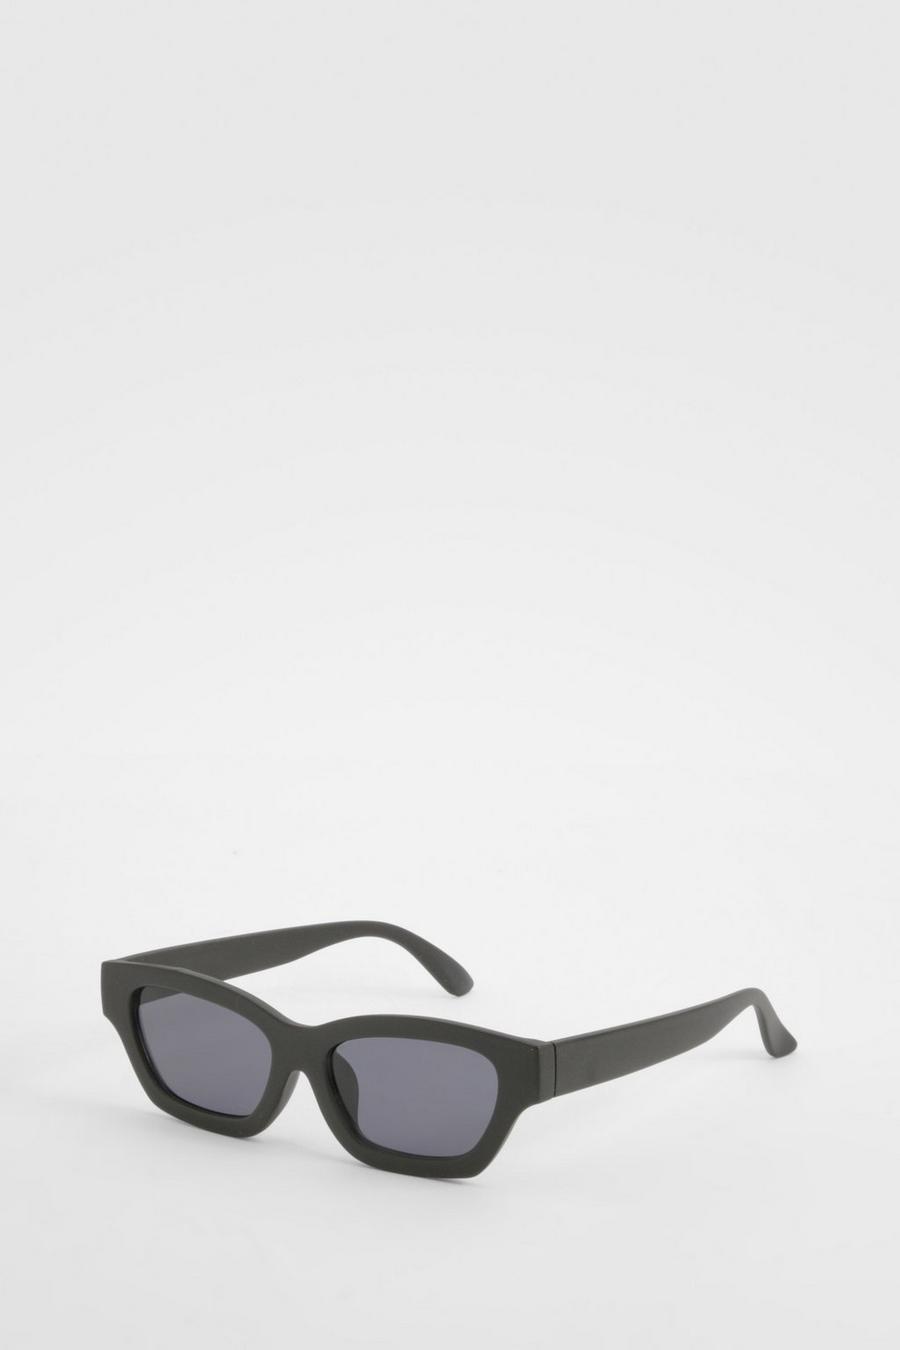 Gafas de sol negras estilo ojo de gato, Black